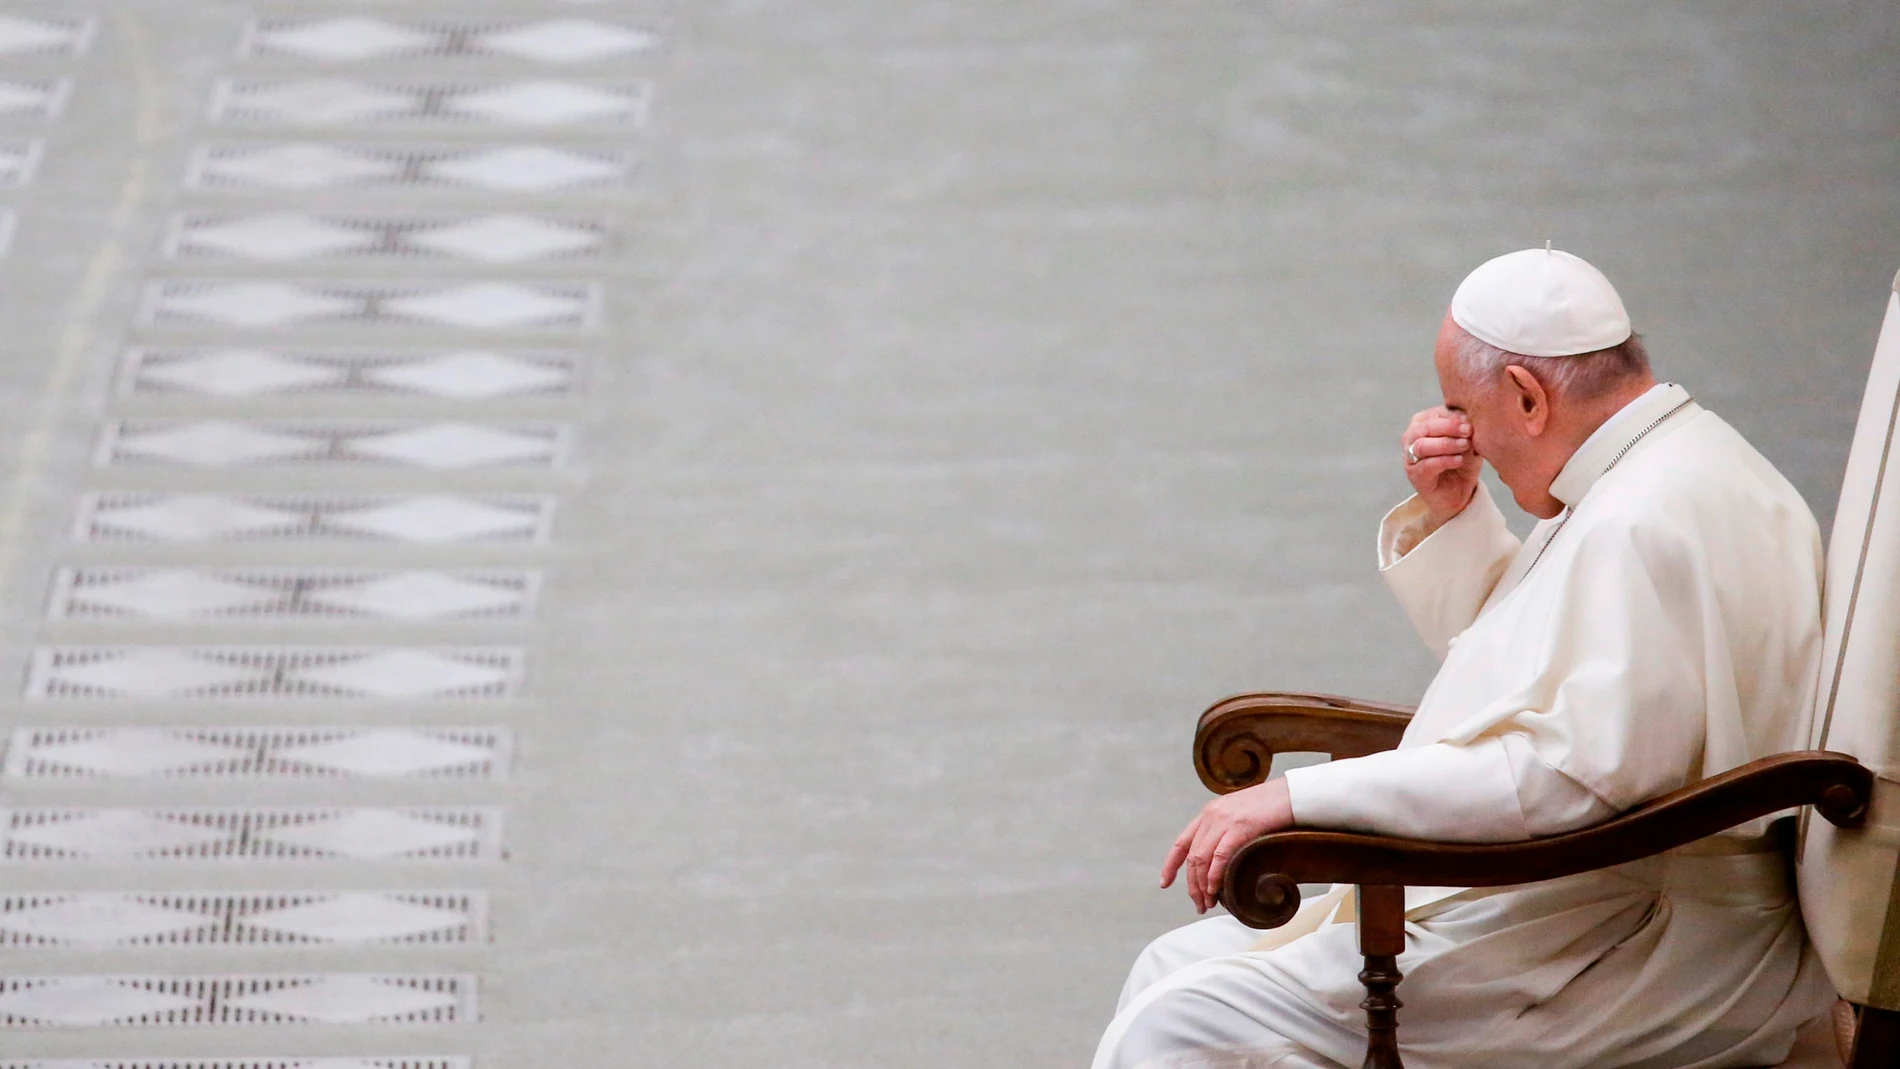 "El odio, antes de que sea demasiado tarde, hay que extirparlo de los corazones", afirma el Papa Francisco